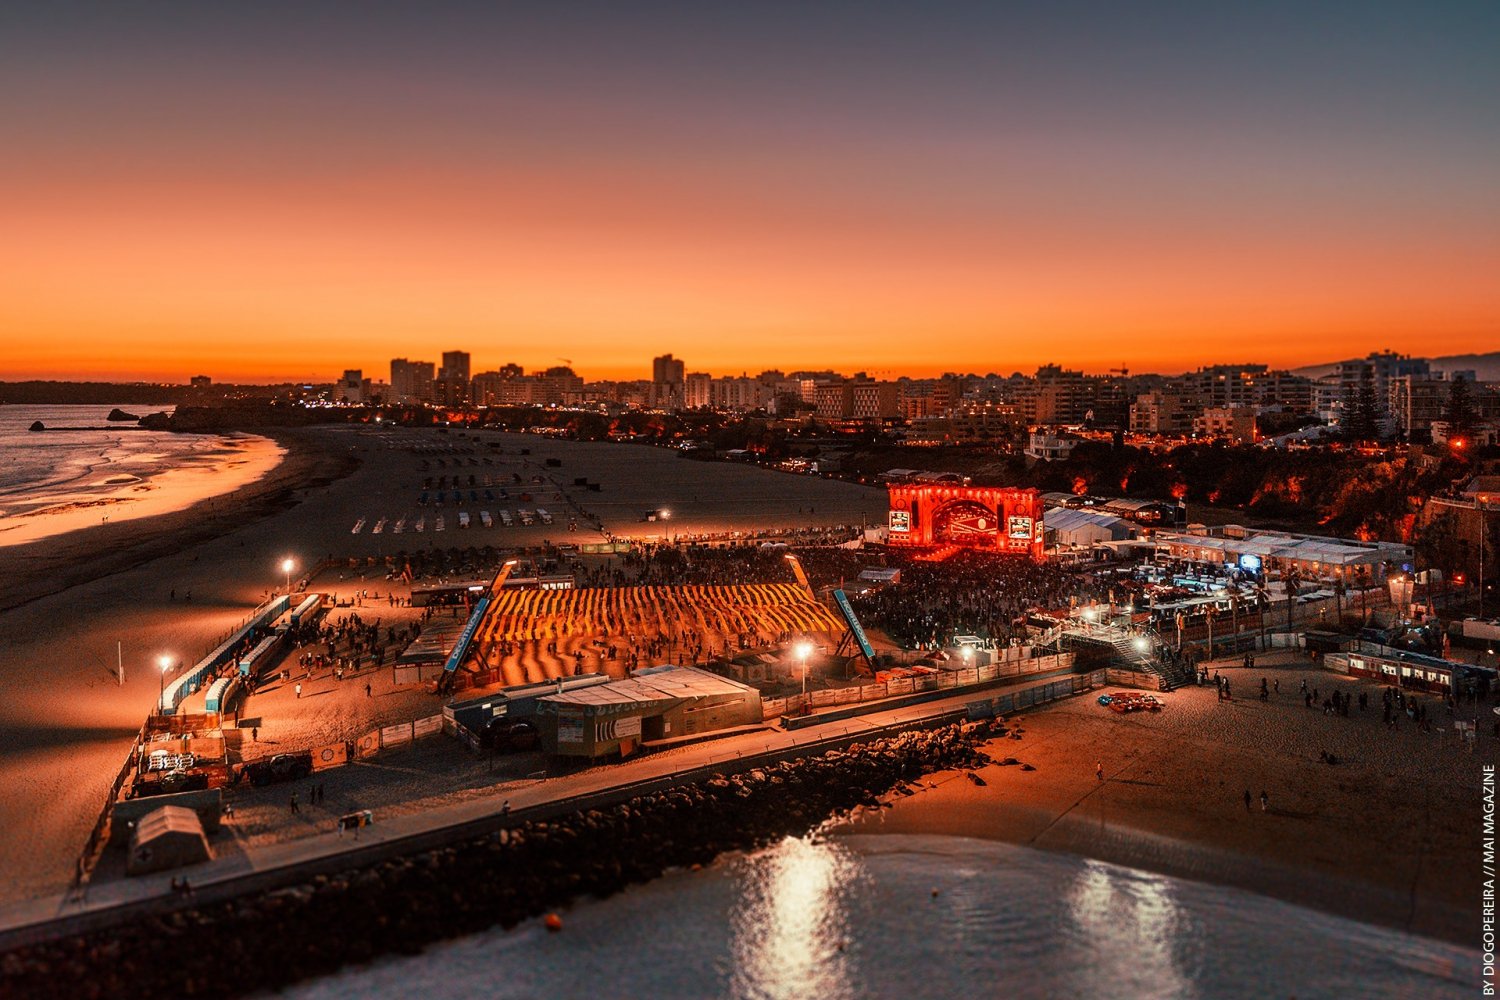 Festival Guide: Algarve. Updated for 2023